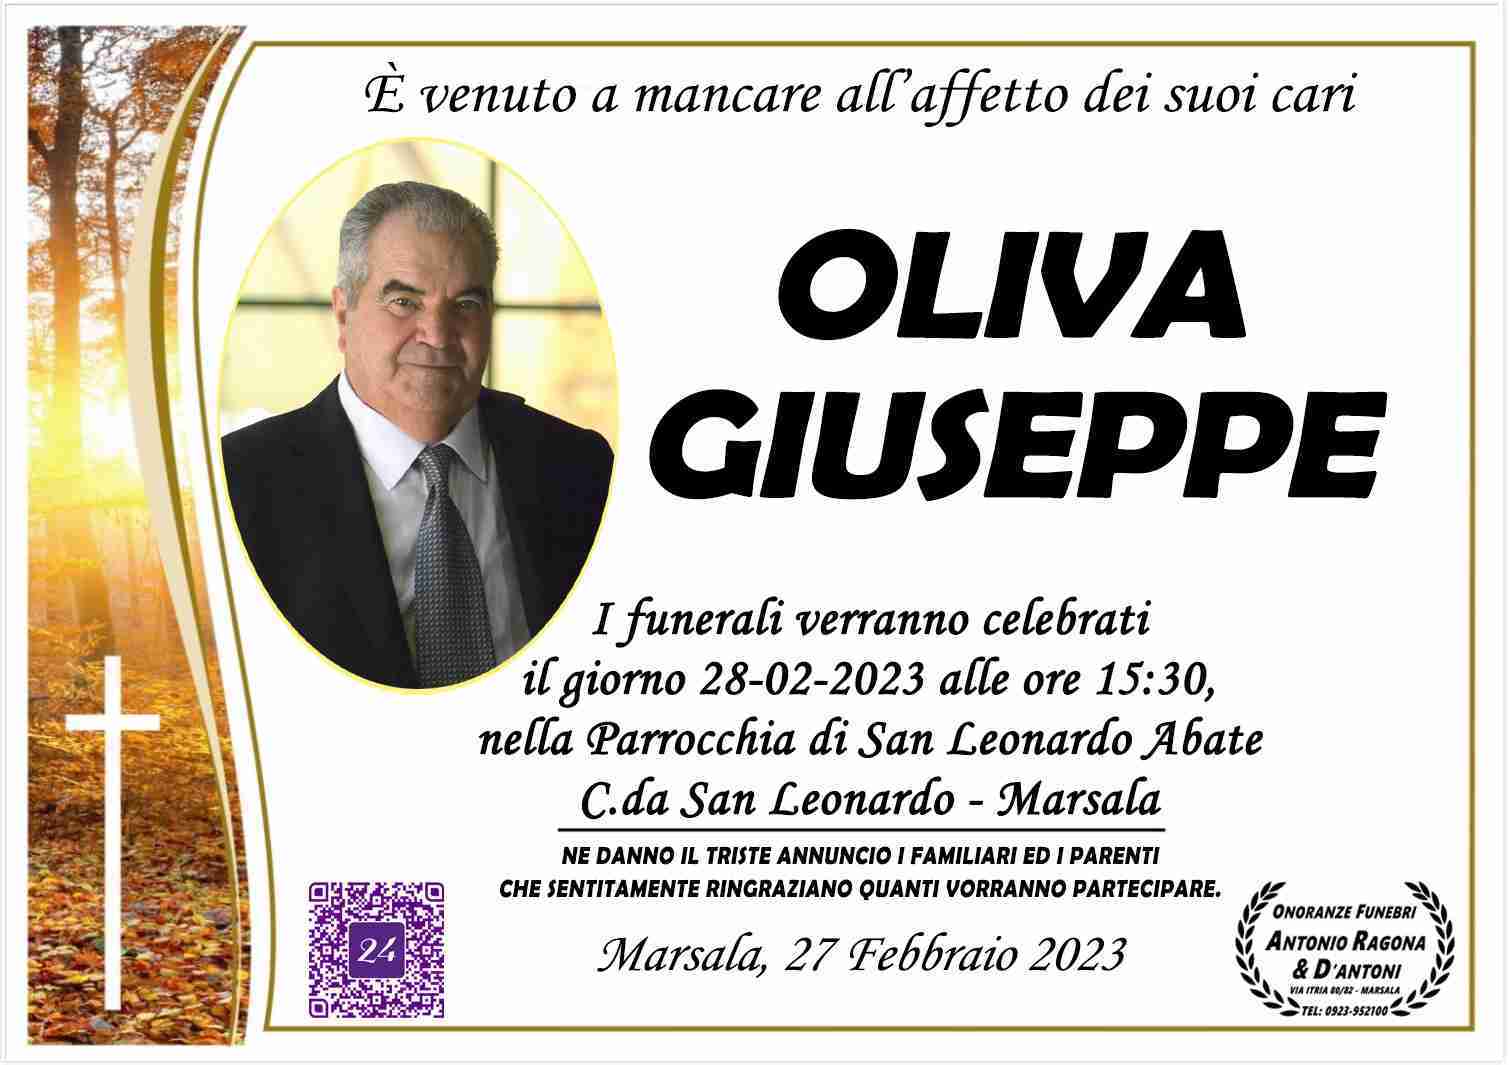 Giuseppe Oliva